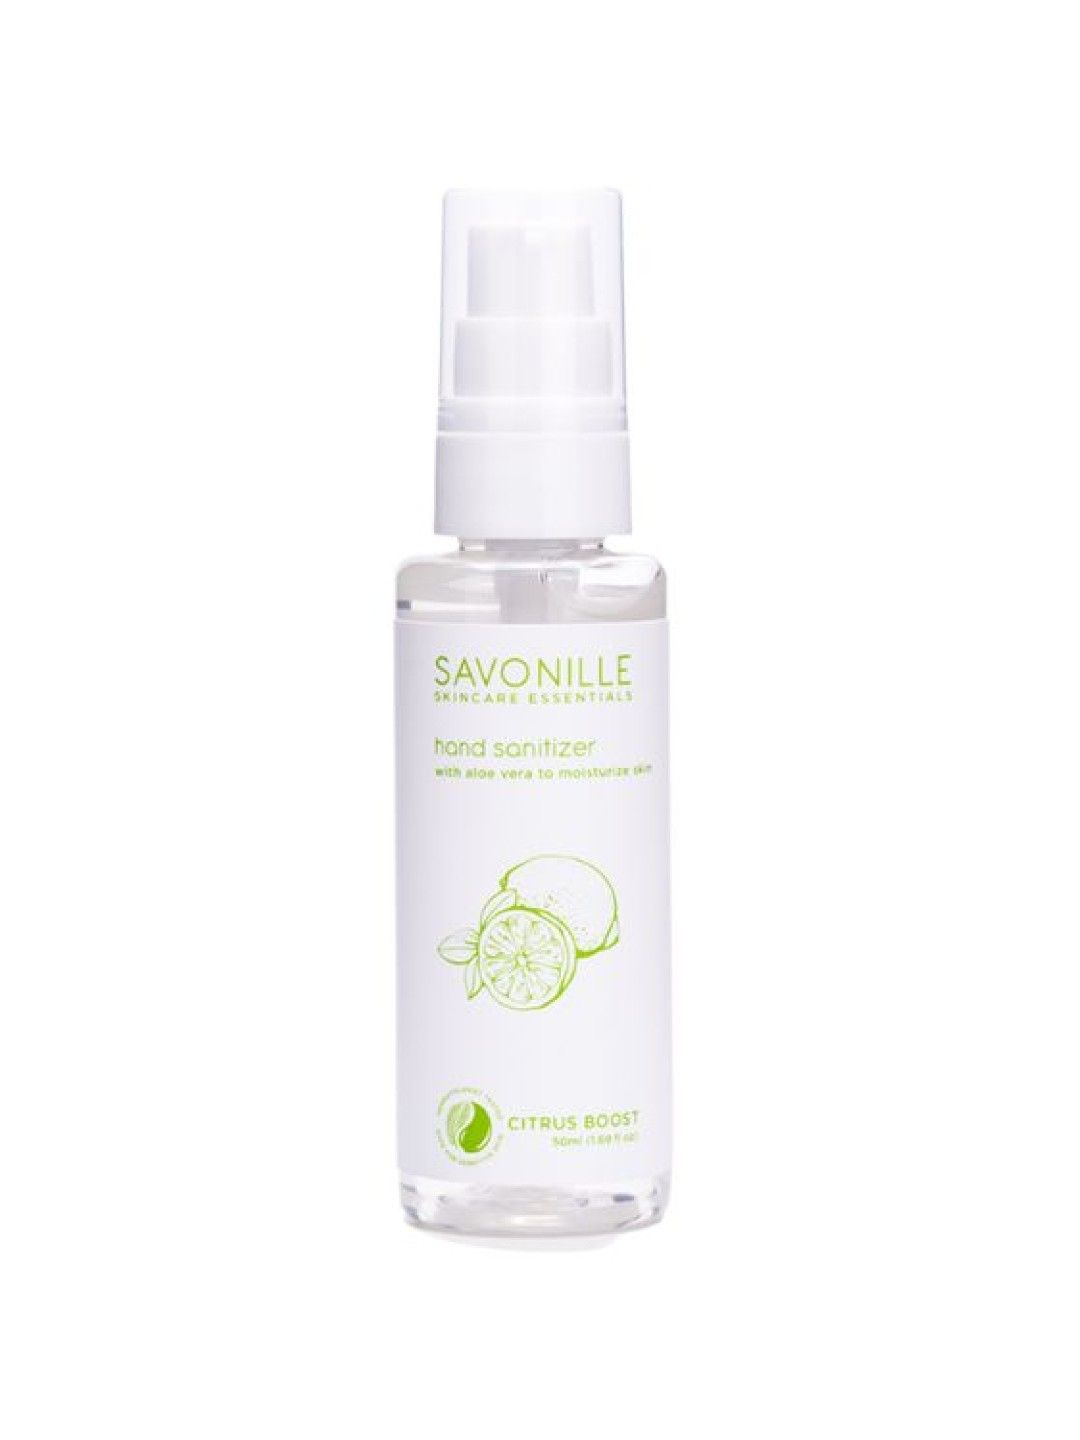 Savonille Skincare Essentials Citrus Boost Travel Trio (No Color- Image 2)